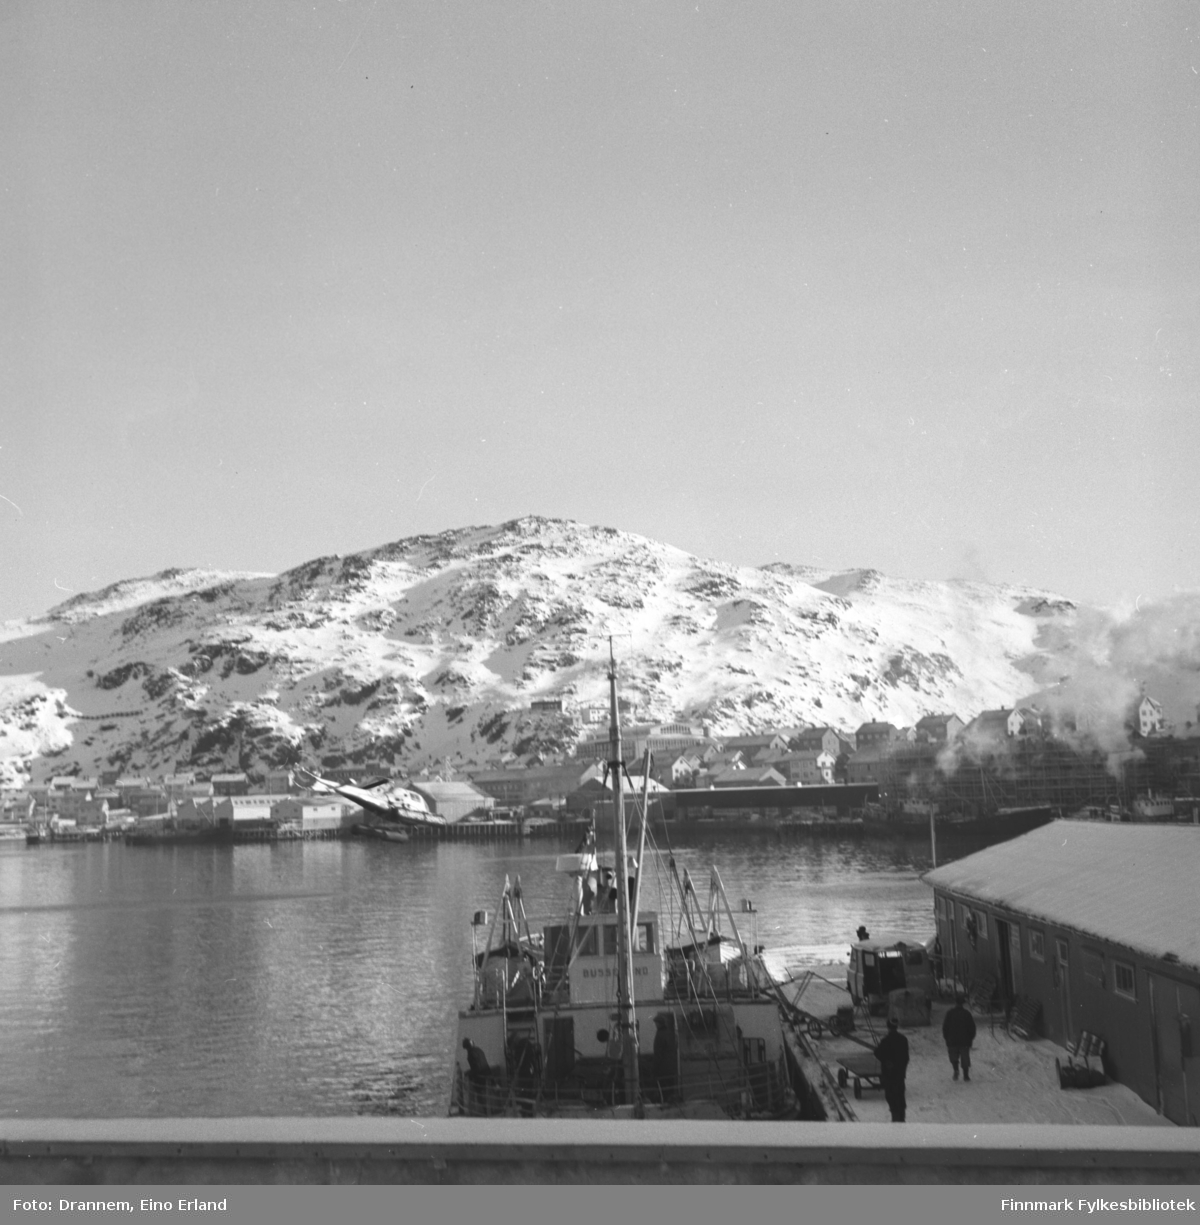 Del av Hammerfest fotografert fra Tollboden med båten "Bussesund" som ligger i forgrunnen ved Dampskipskaia. Mollafjell ses i bakgrunnen. Et helikopter går inn for landing i havneområdet.